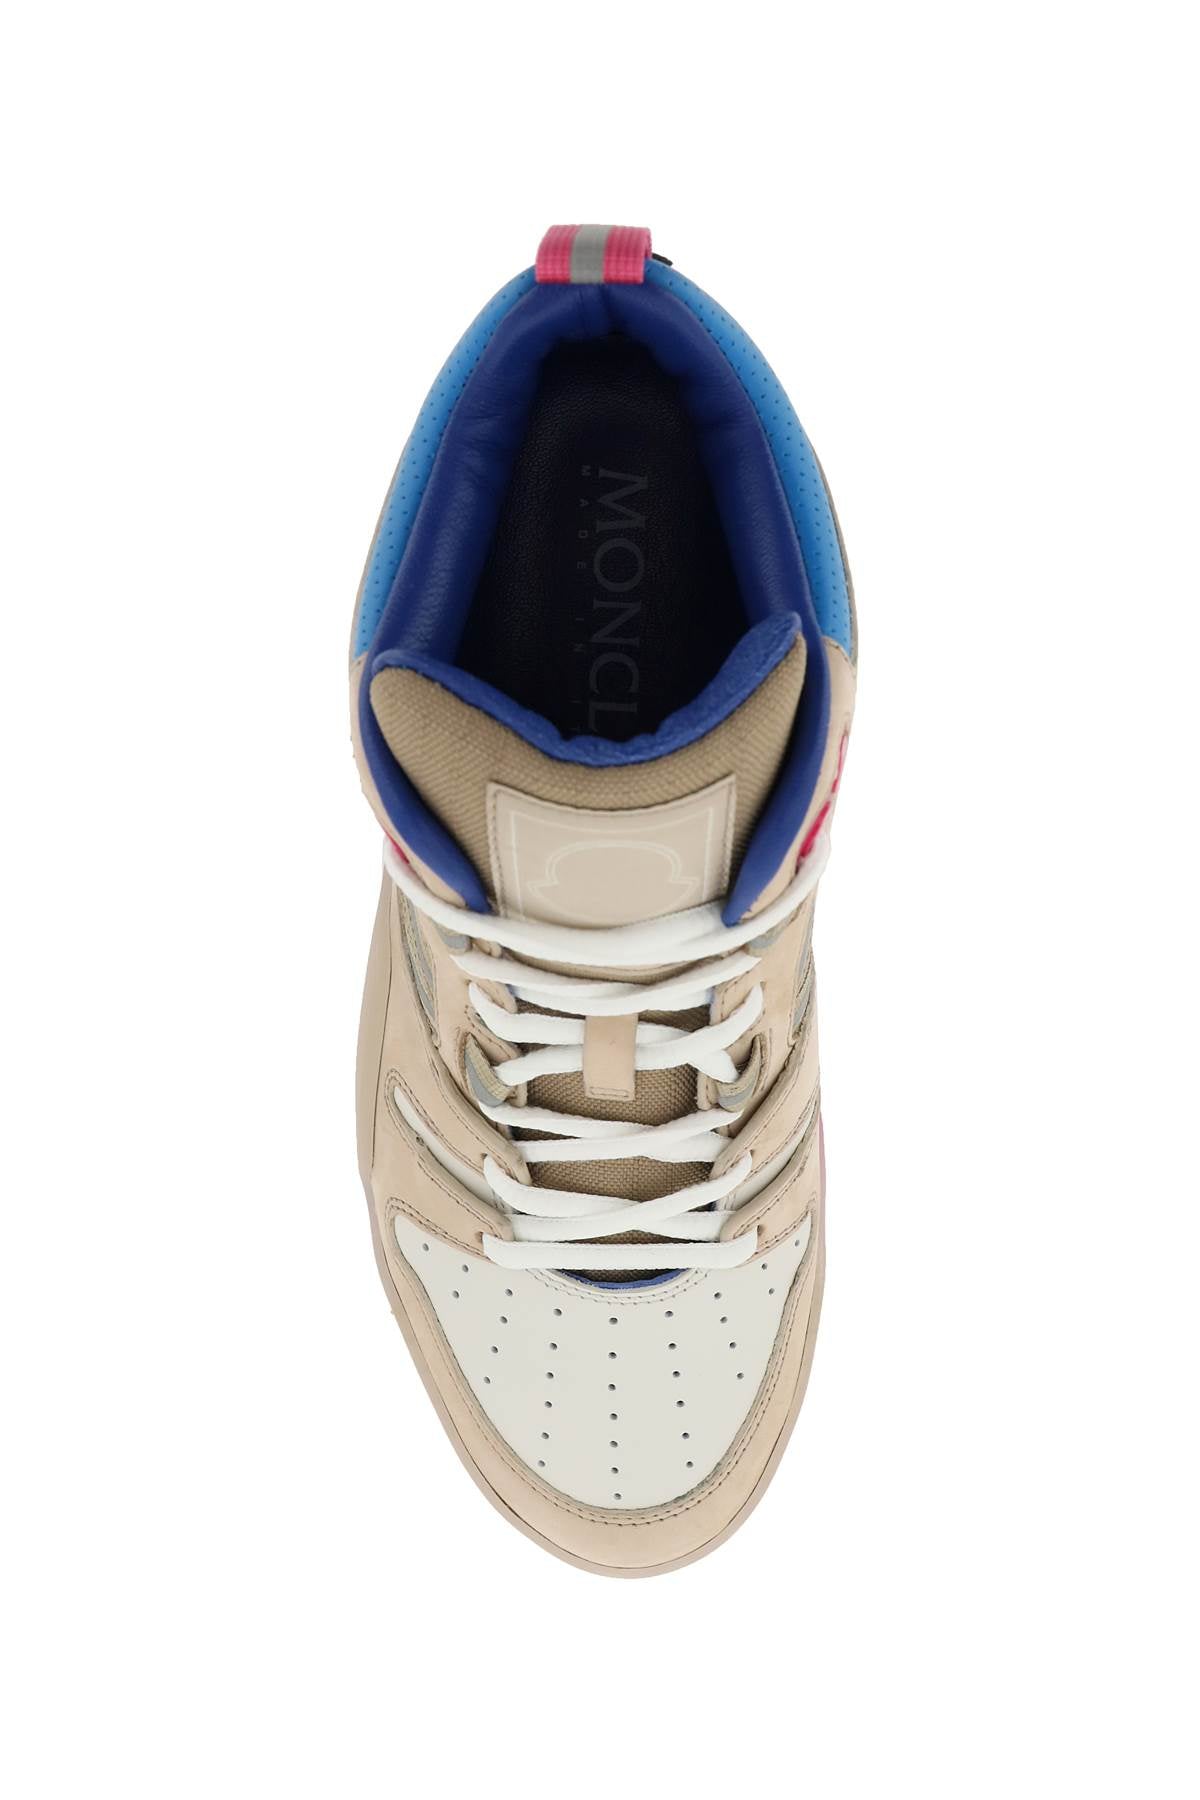 Louis Vuitton 508 Sneaker Size 8.5